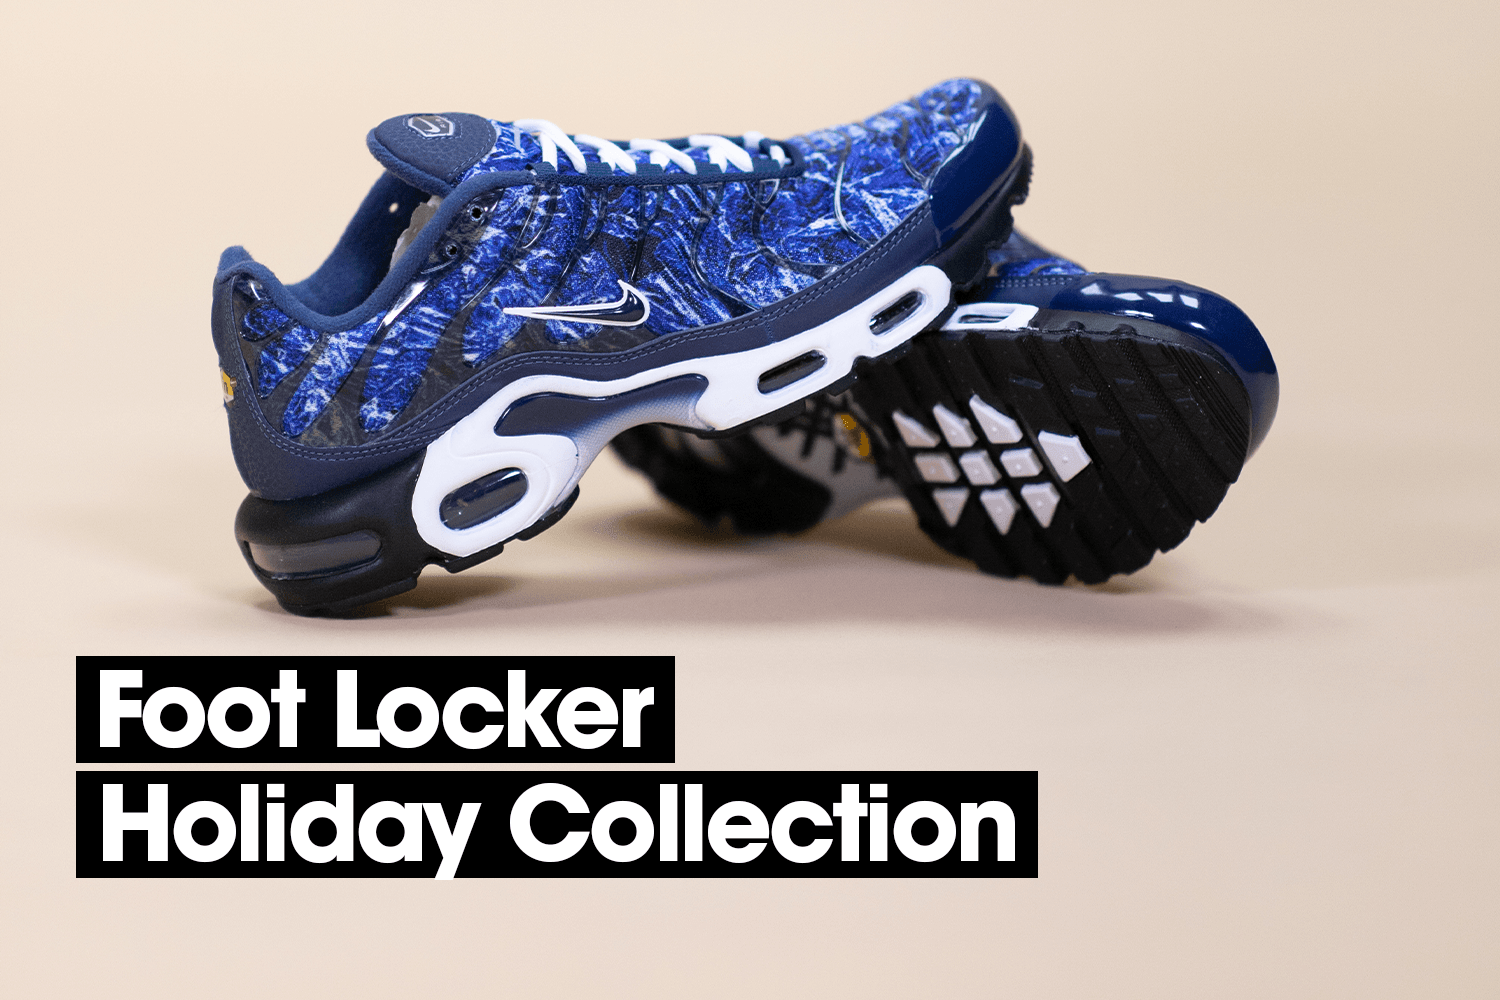 Shop de leukste items uit de Holiday collectie bij Foot Locker